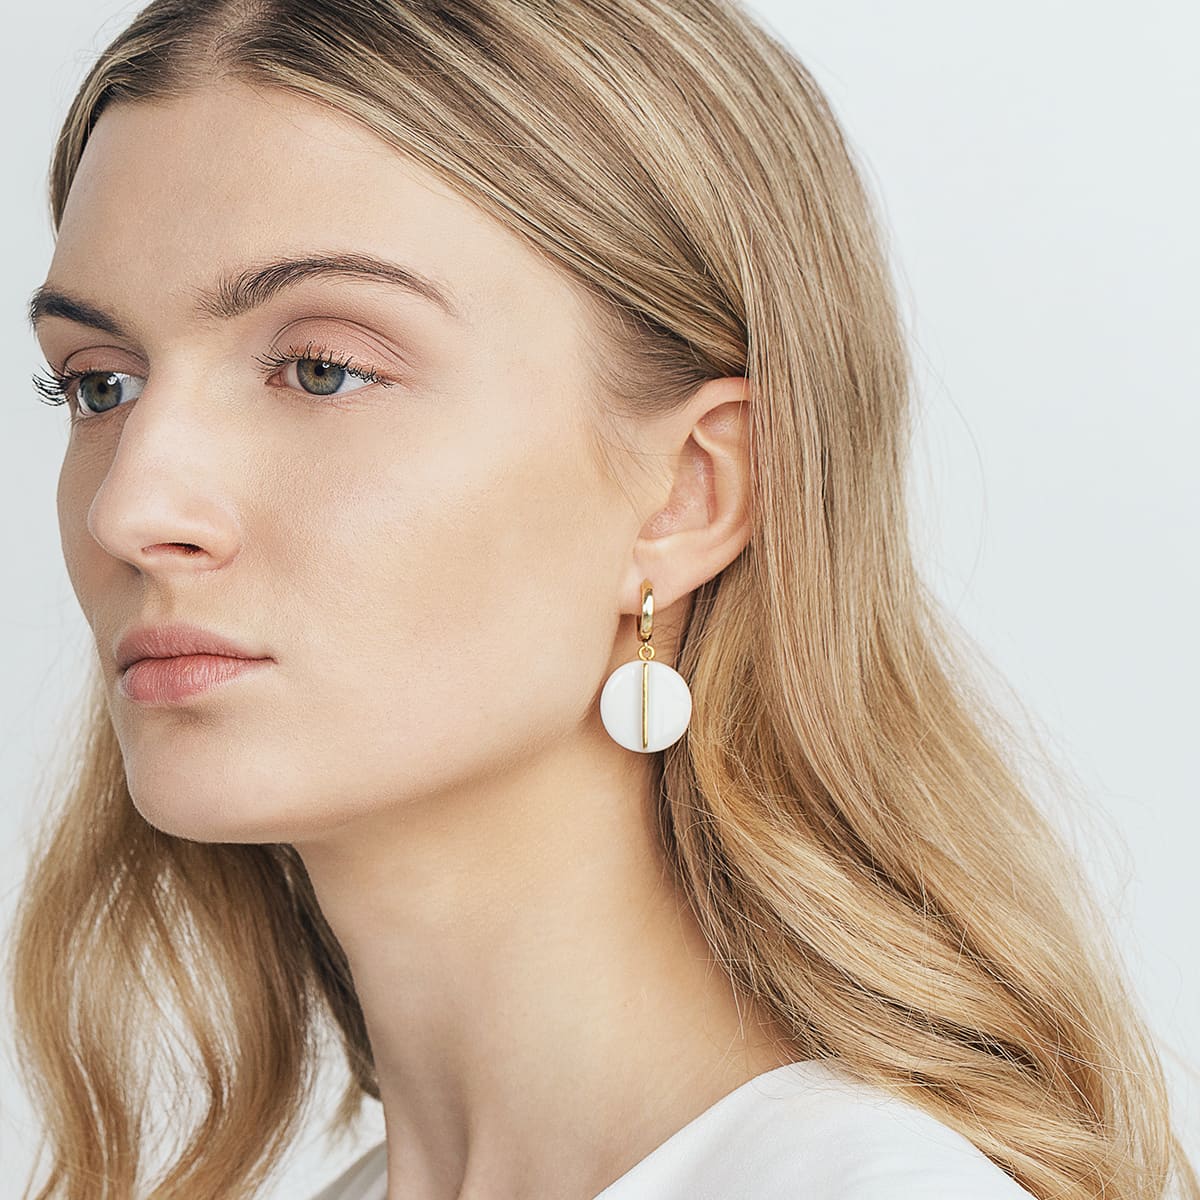 White porcelain earring